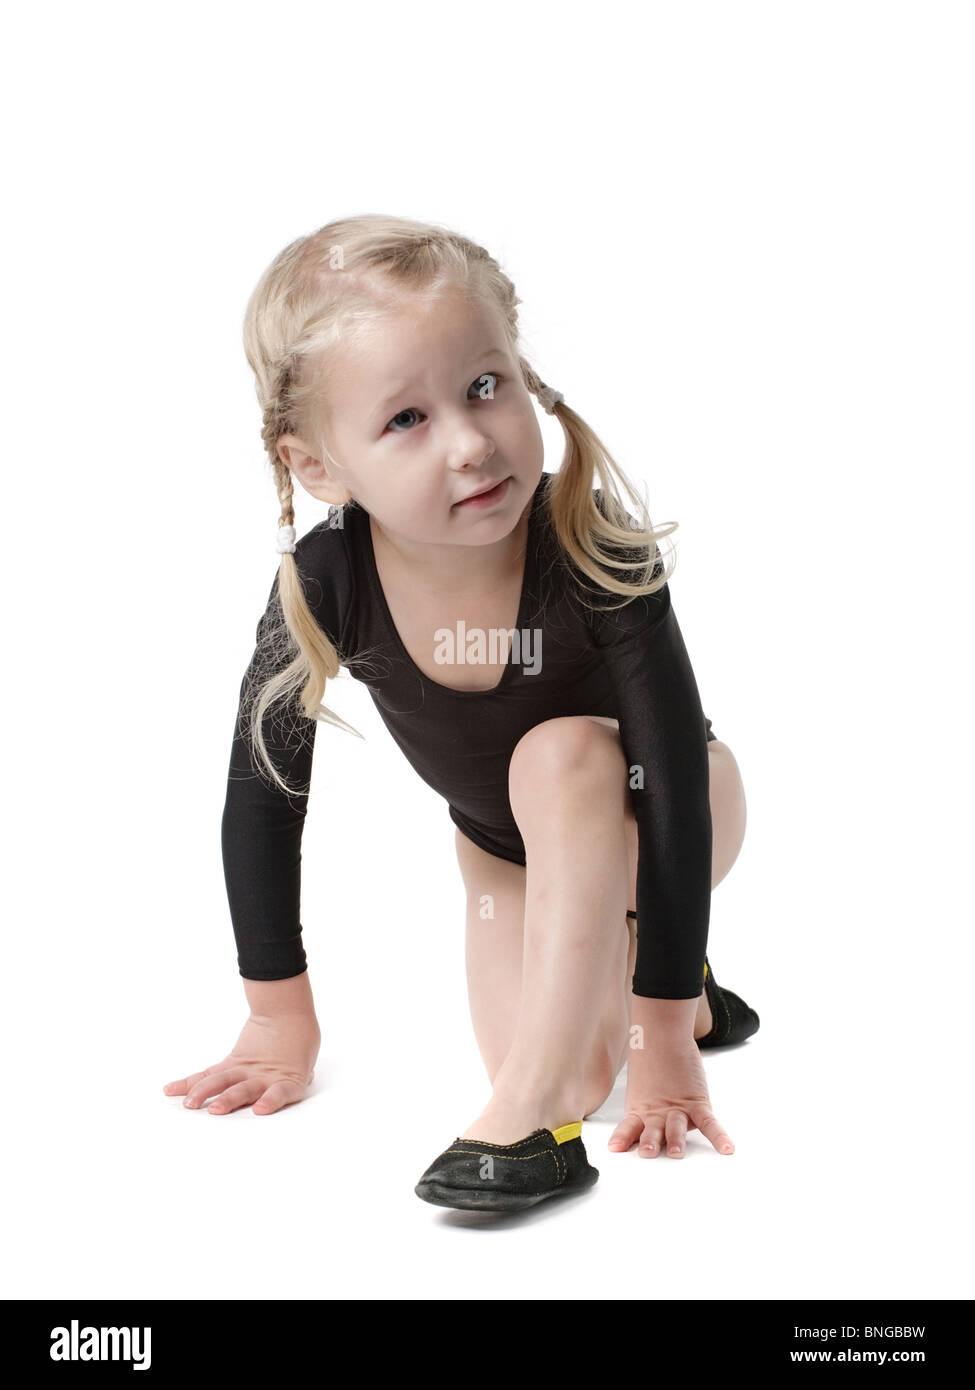 kleines Mädchen in Body für Rhythmische Sportgymnastik versucht den Spagat, isoliert auf weiss Stockfoto